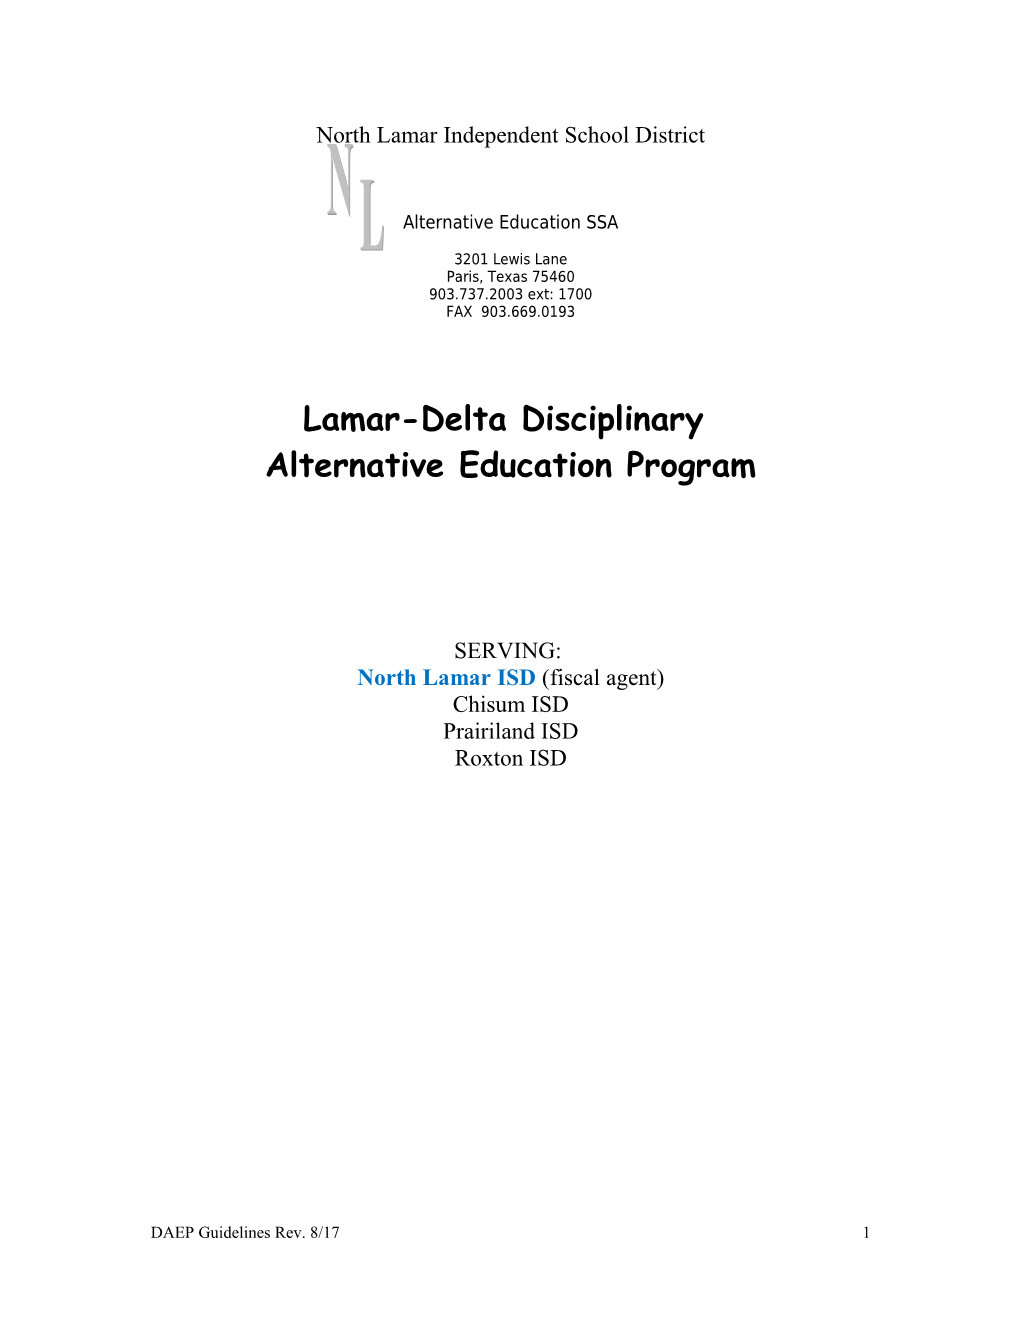 Lamar-Delta Alternative Education Program